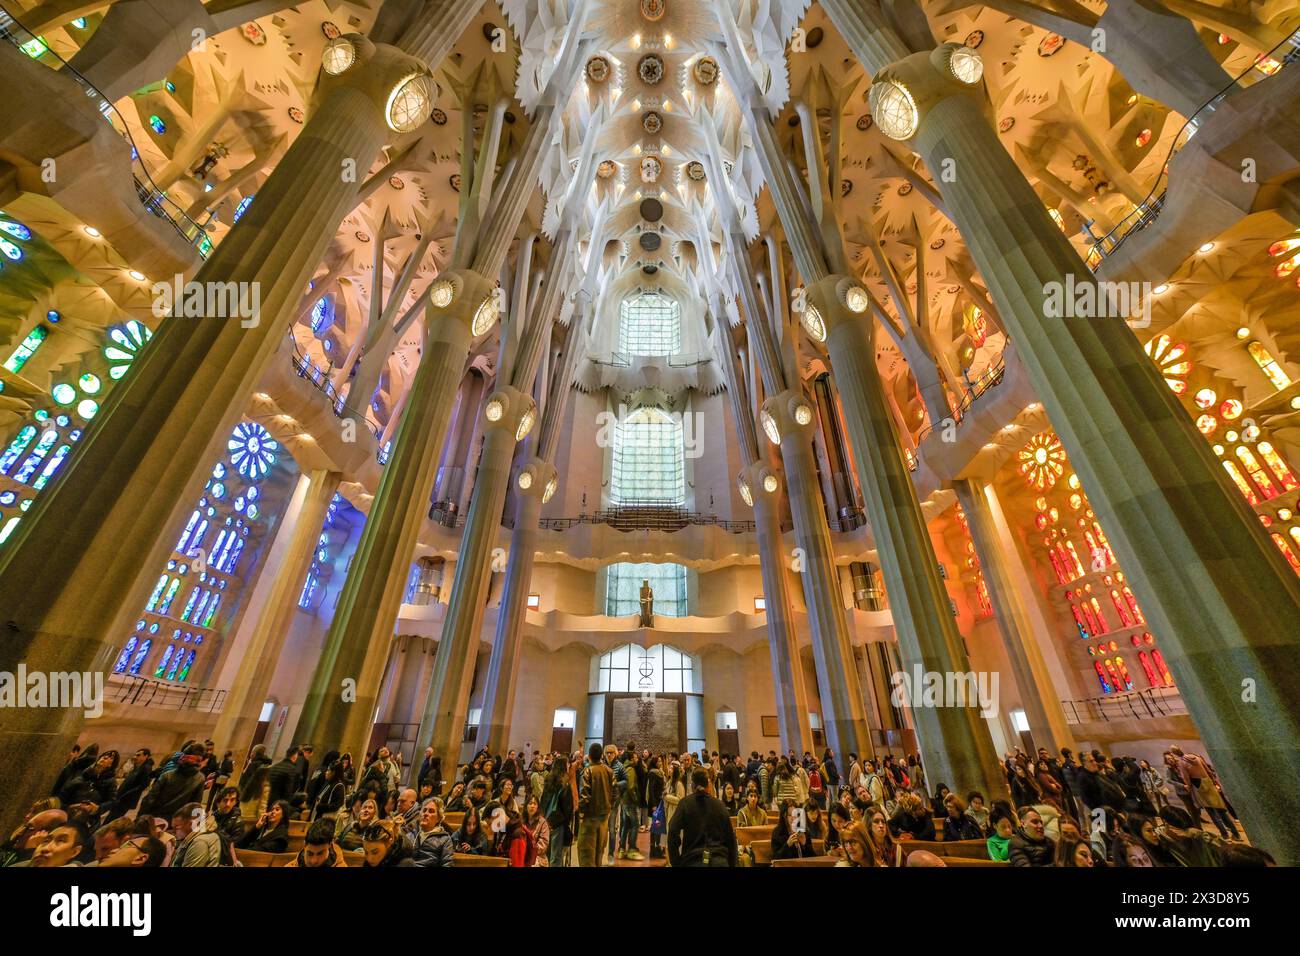 Hauptschiff, Deckengewölbe, Säulen, Sagrada Familia, Basilica von Antoni Gaudi, Barcelona, Katalonien, Spanien Banque D'Images